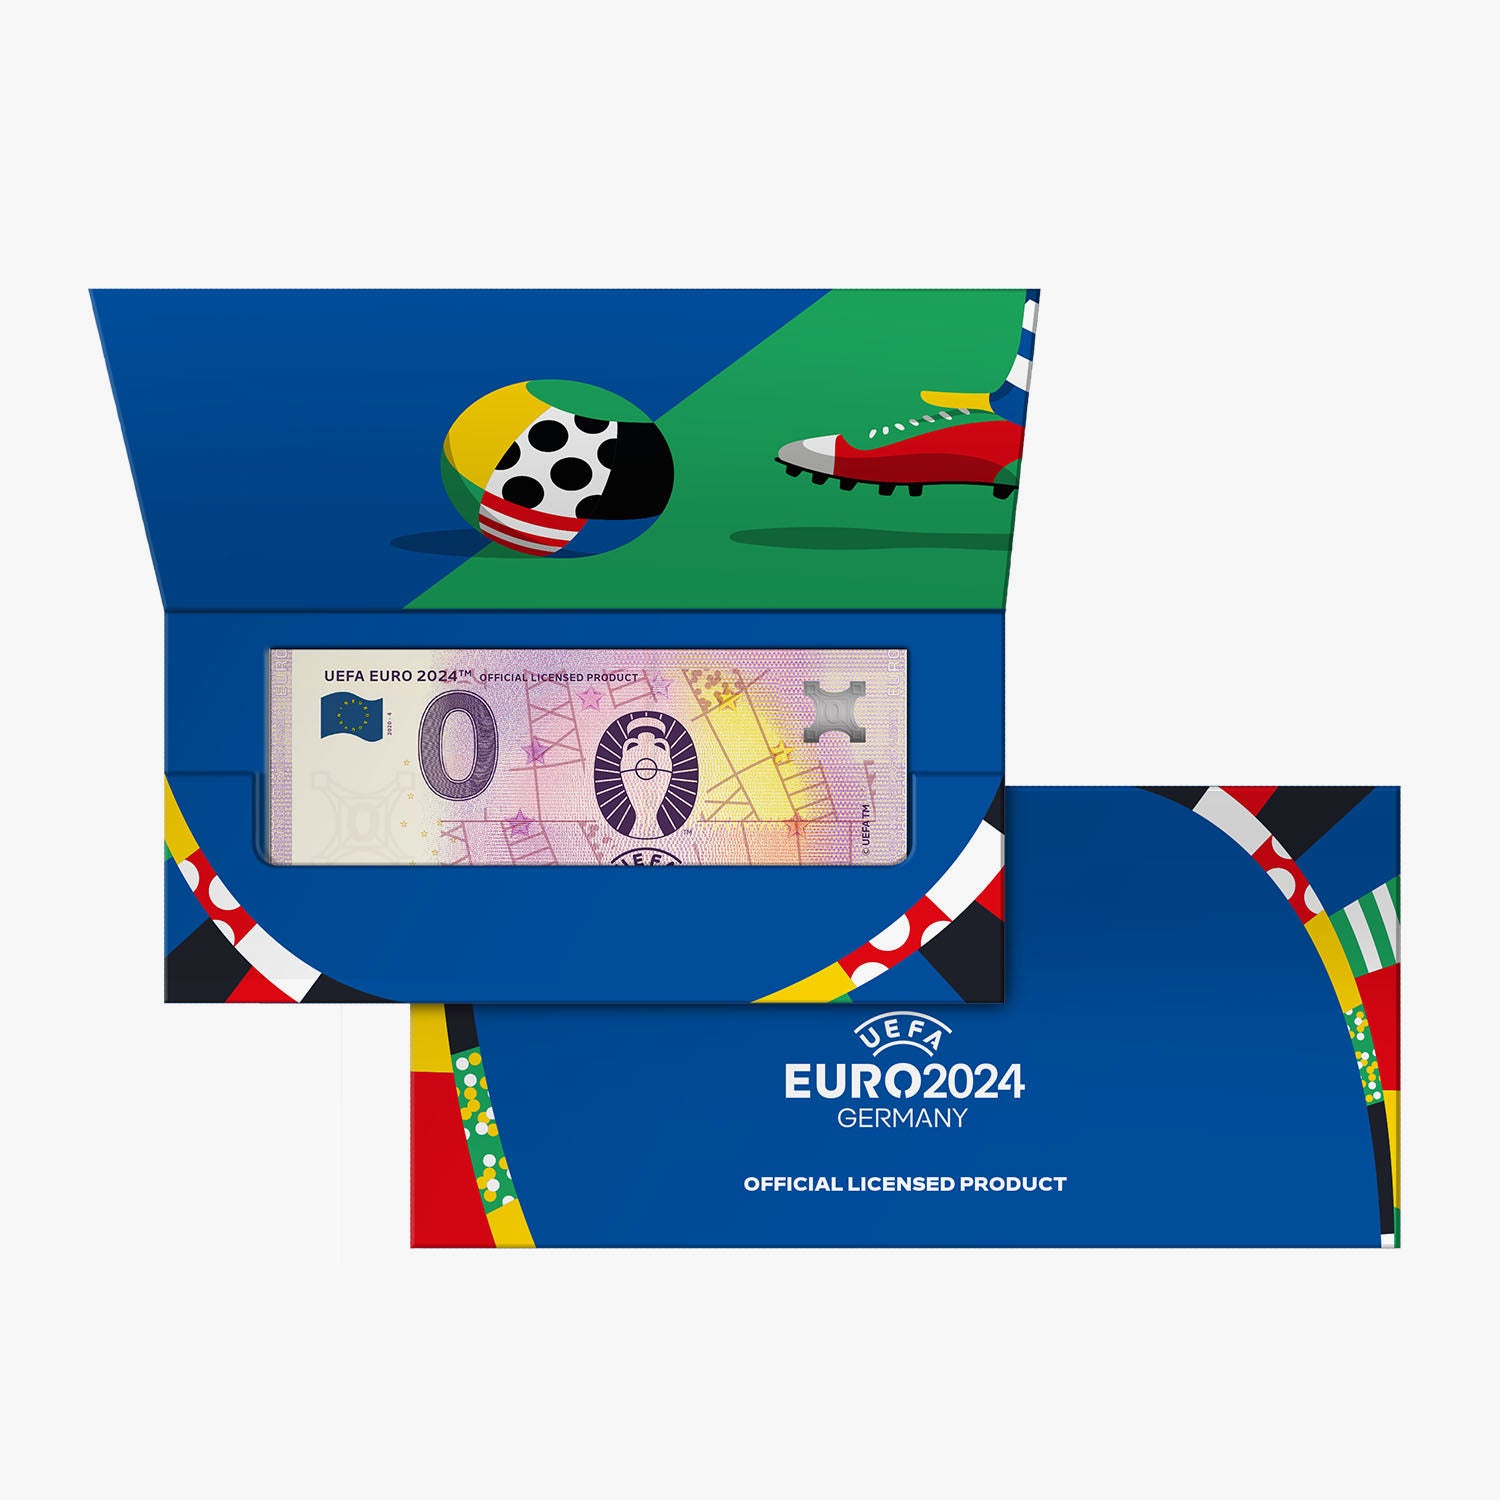 Billet de banque officiel de 0 € de l'UEFA EURO 2024 dans un portefeuille